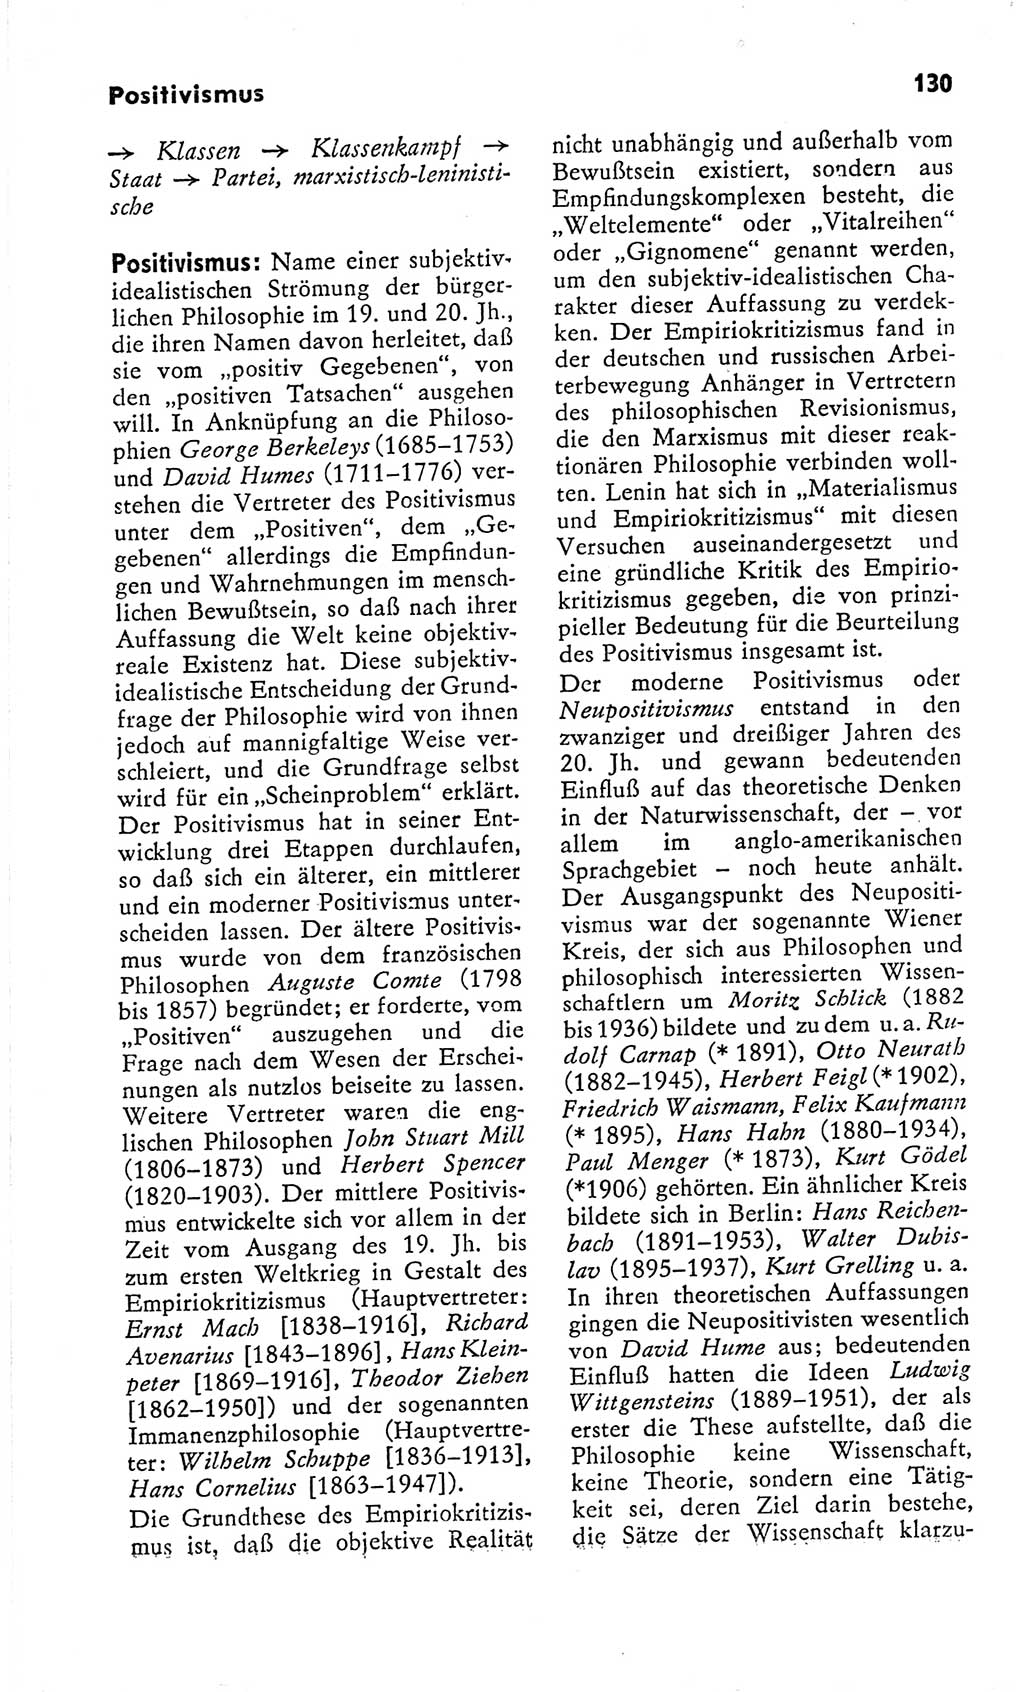 Kleines Wörterbuch der marxistisch-leninistischen Philosophie [Deutsche Demokratische Republik (DDR)] 1966, Seite 130 (Kl. Wb. ML Phil. DDR 1966, S. 130)